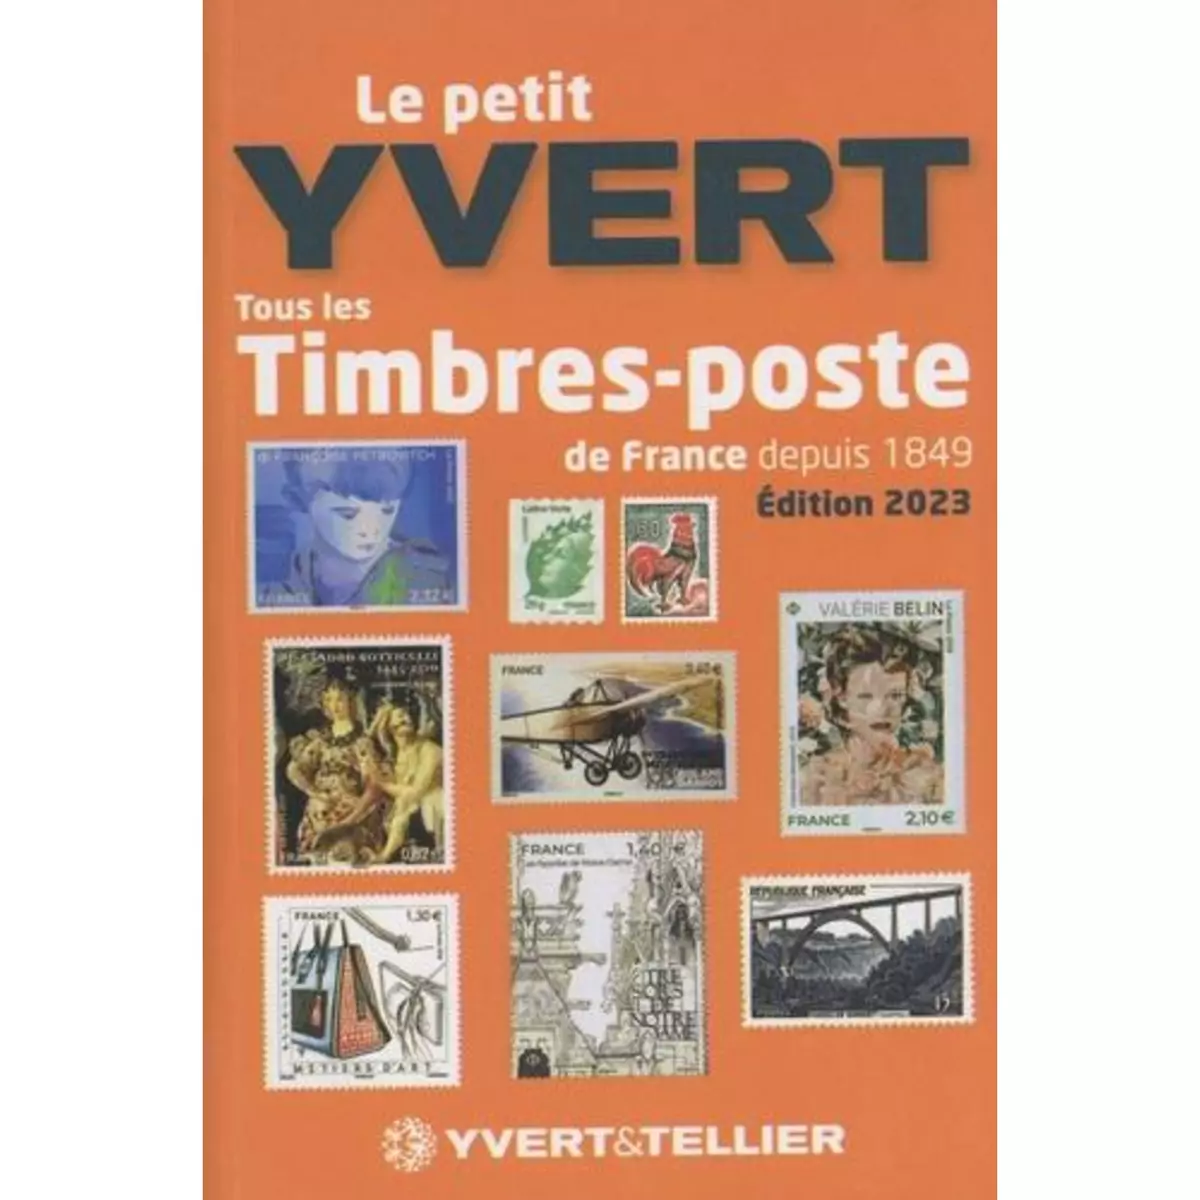  LE PETIT YVERT. TOUS LES TIMBRES-POSTE DE FRANCE DEPUIS 1849, EDITION 2023, Yvert & Tellier